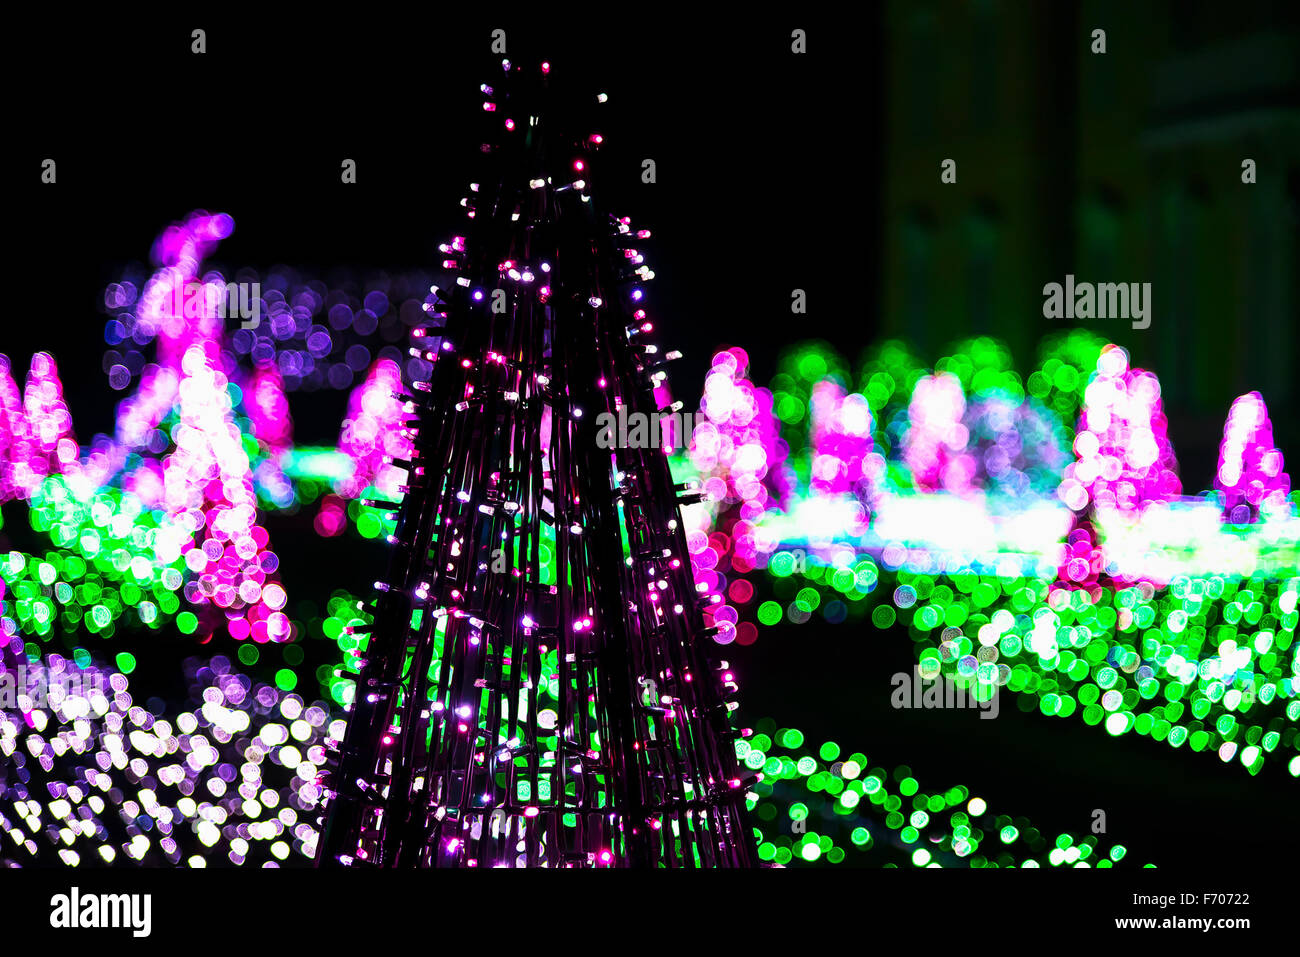 Árbol de navidad de Navidad guirnalda de iluminación en luces de colores en el fondo en el edificio Foto de stock